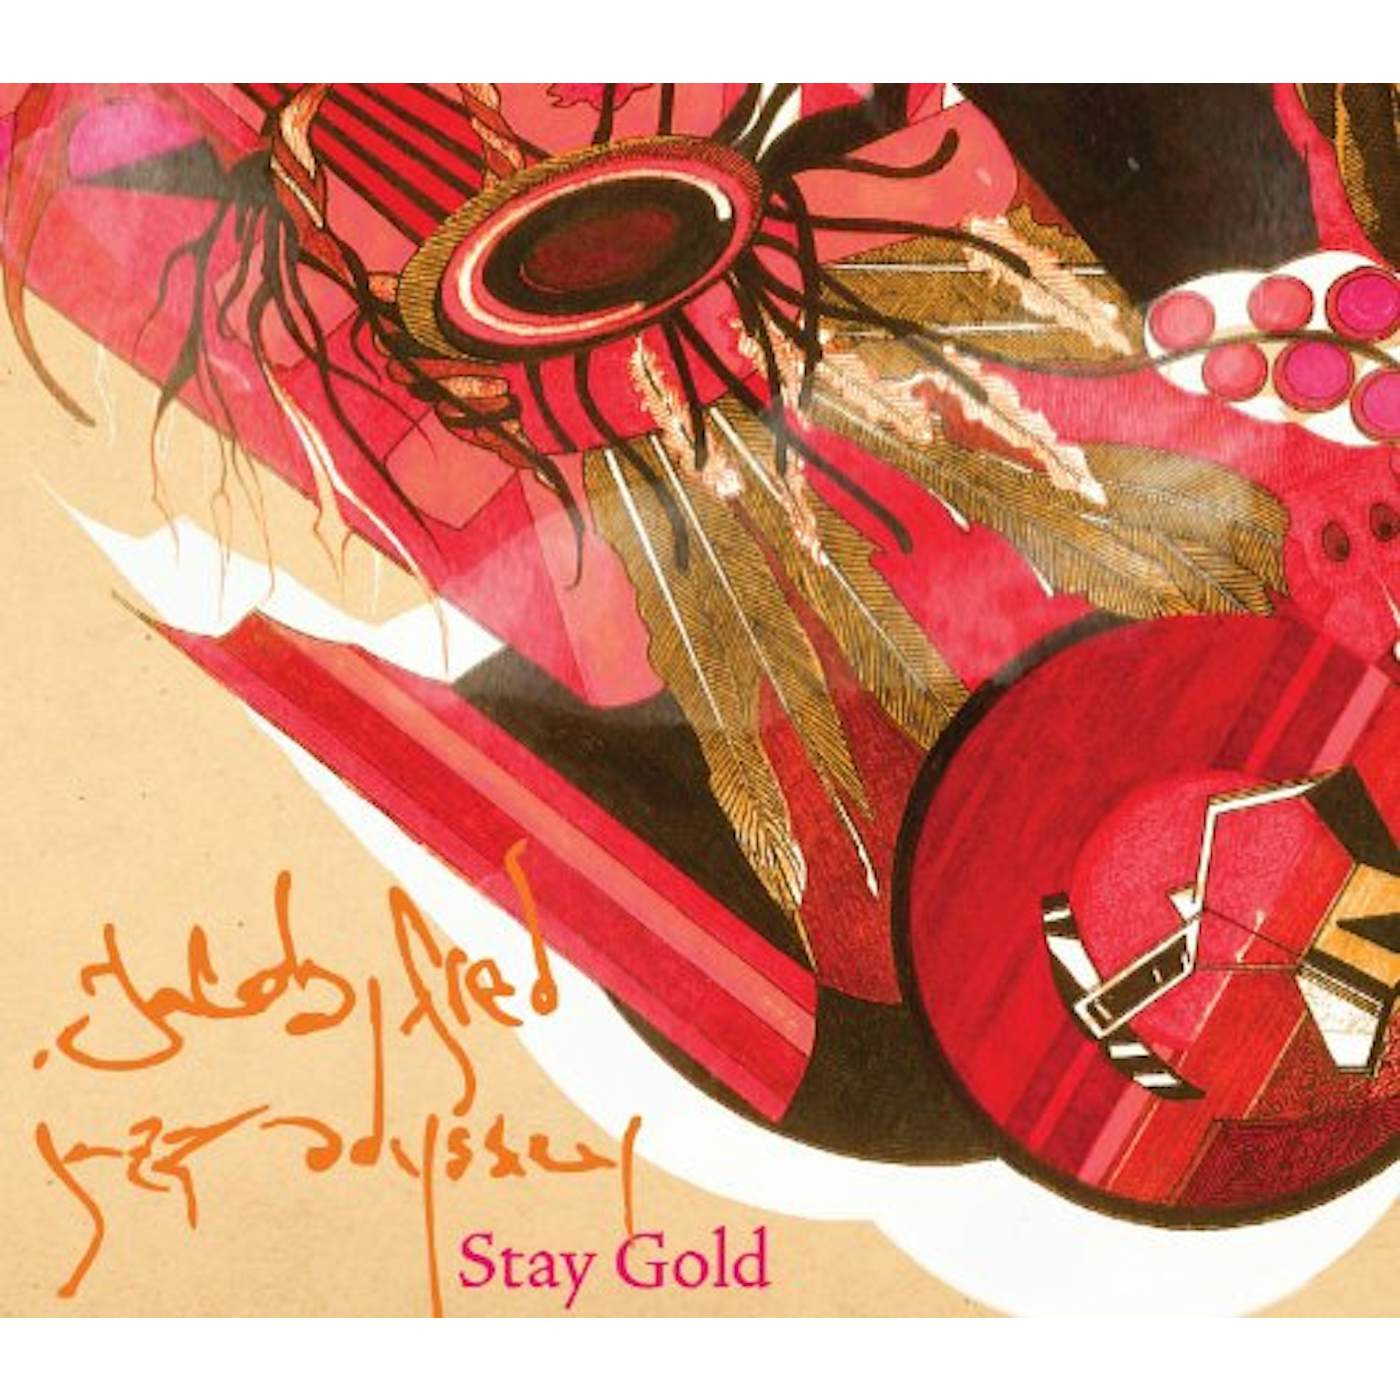 Jacob Fred Jazz Odyssey STAY GOLD CD